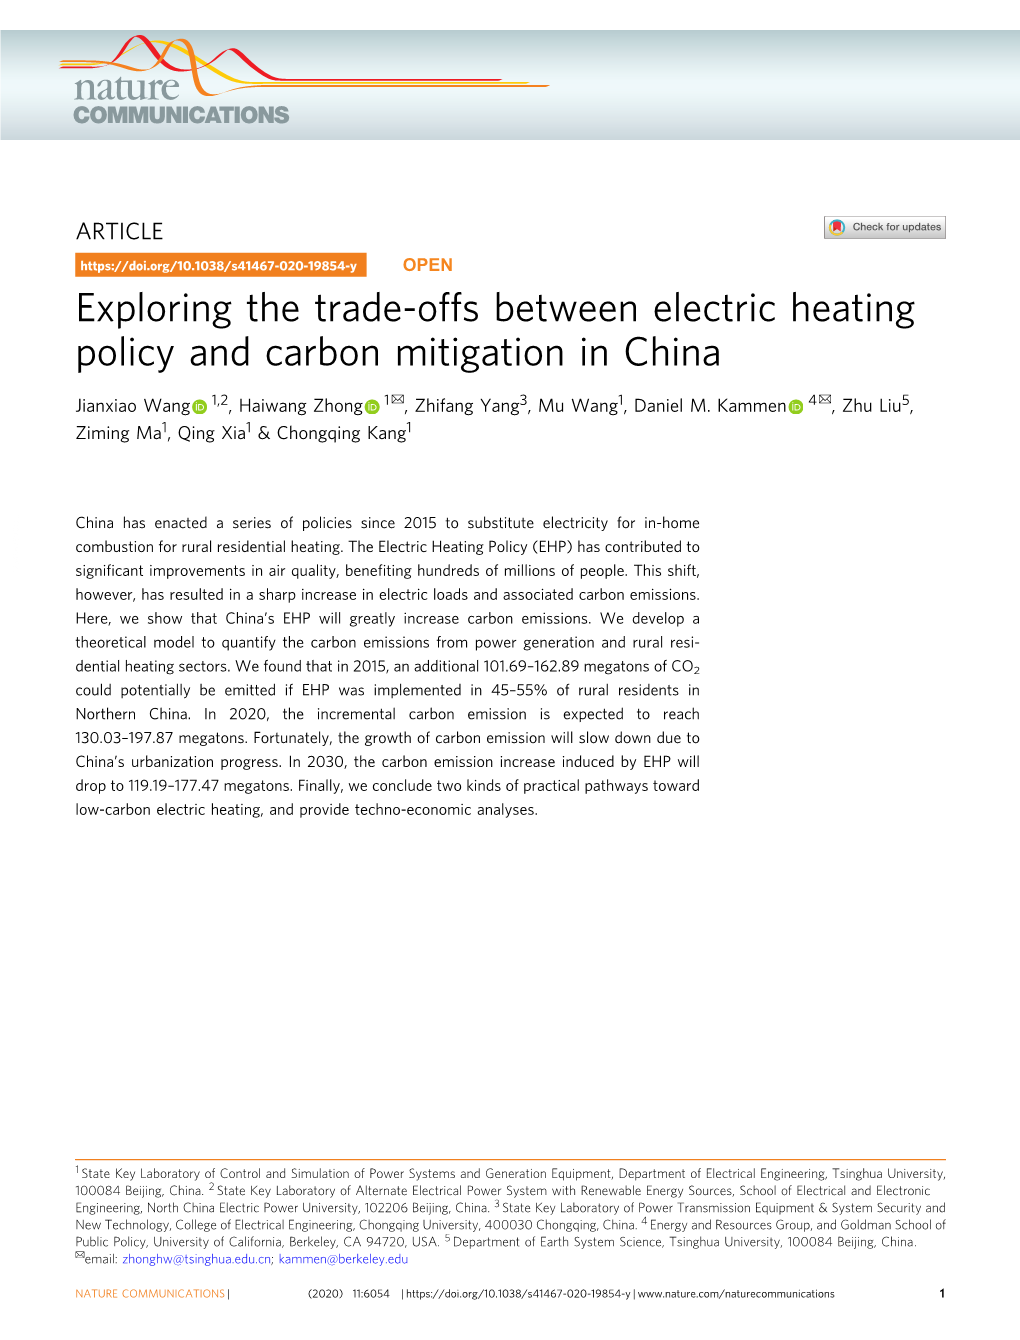 Exploring the Trade-Offs Between Electric Heating Policy and Carbon Mitigation in China ✉ ✉ Jianxiao Wang 1,2, Haiwang Zhong 1 , Zhifang Yang3, Mu Wang1, Daniel M